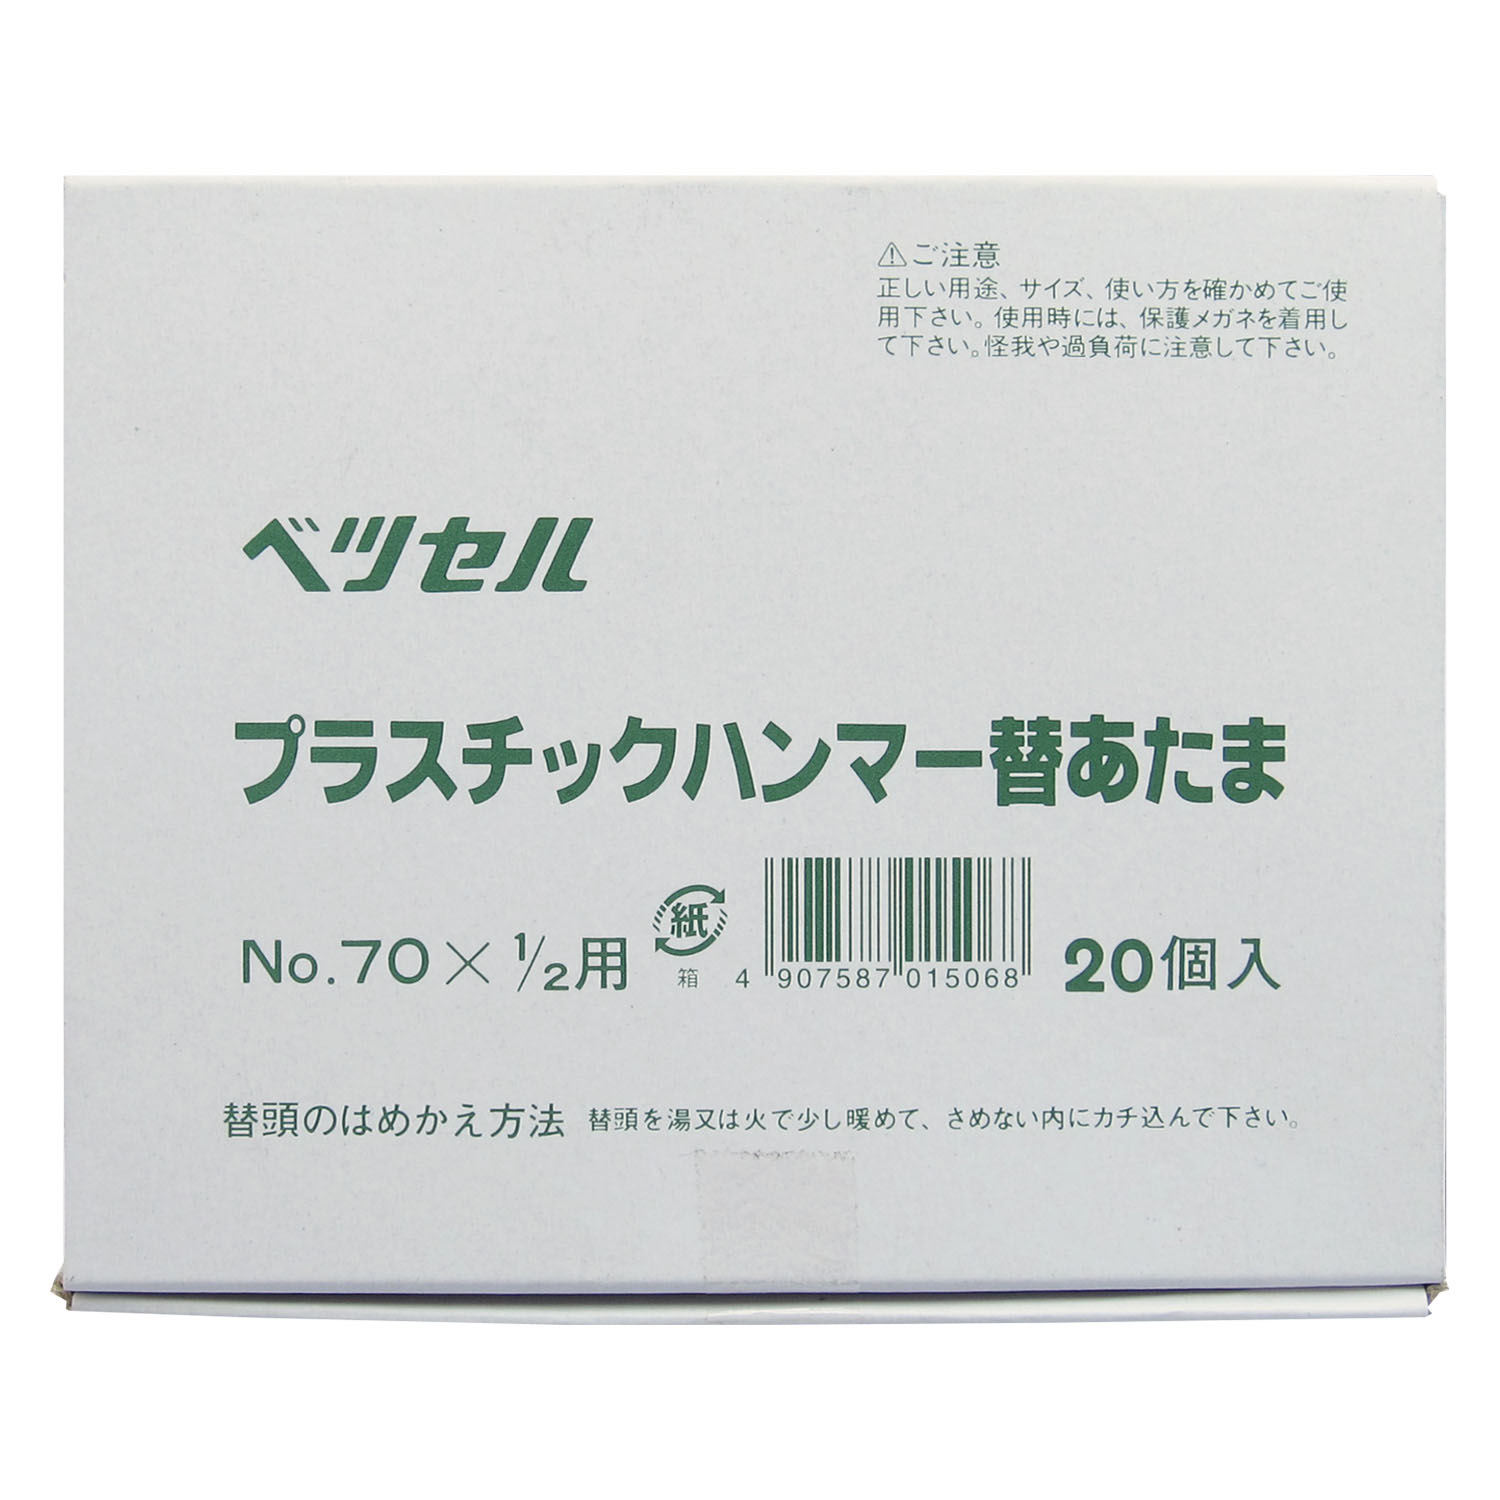 70用 ハンマー替頭 箱入り No.Head 70×1/2(サイズ1/2) | 製品情報 | 株式会社ベッセル